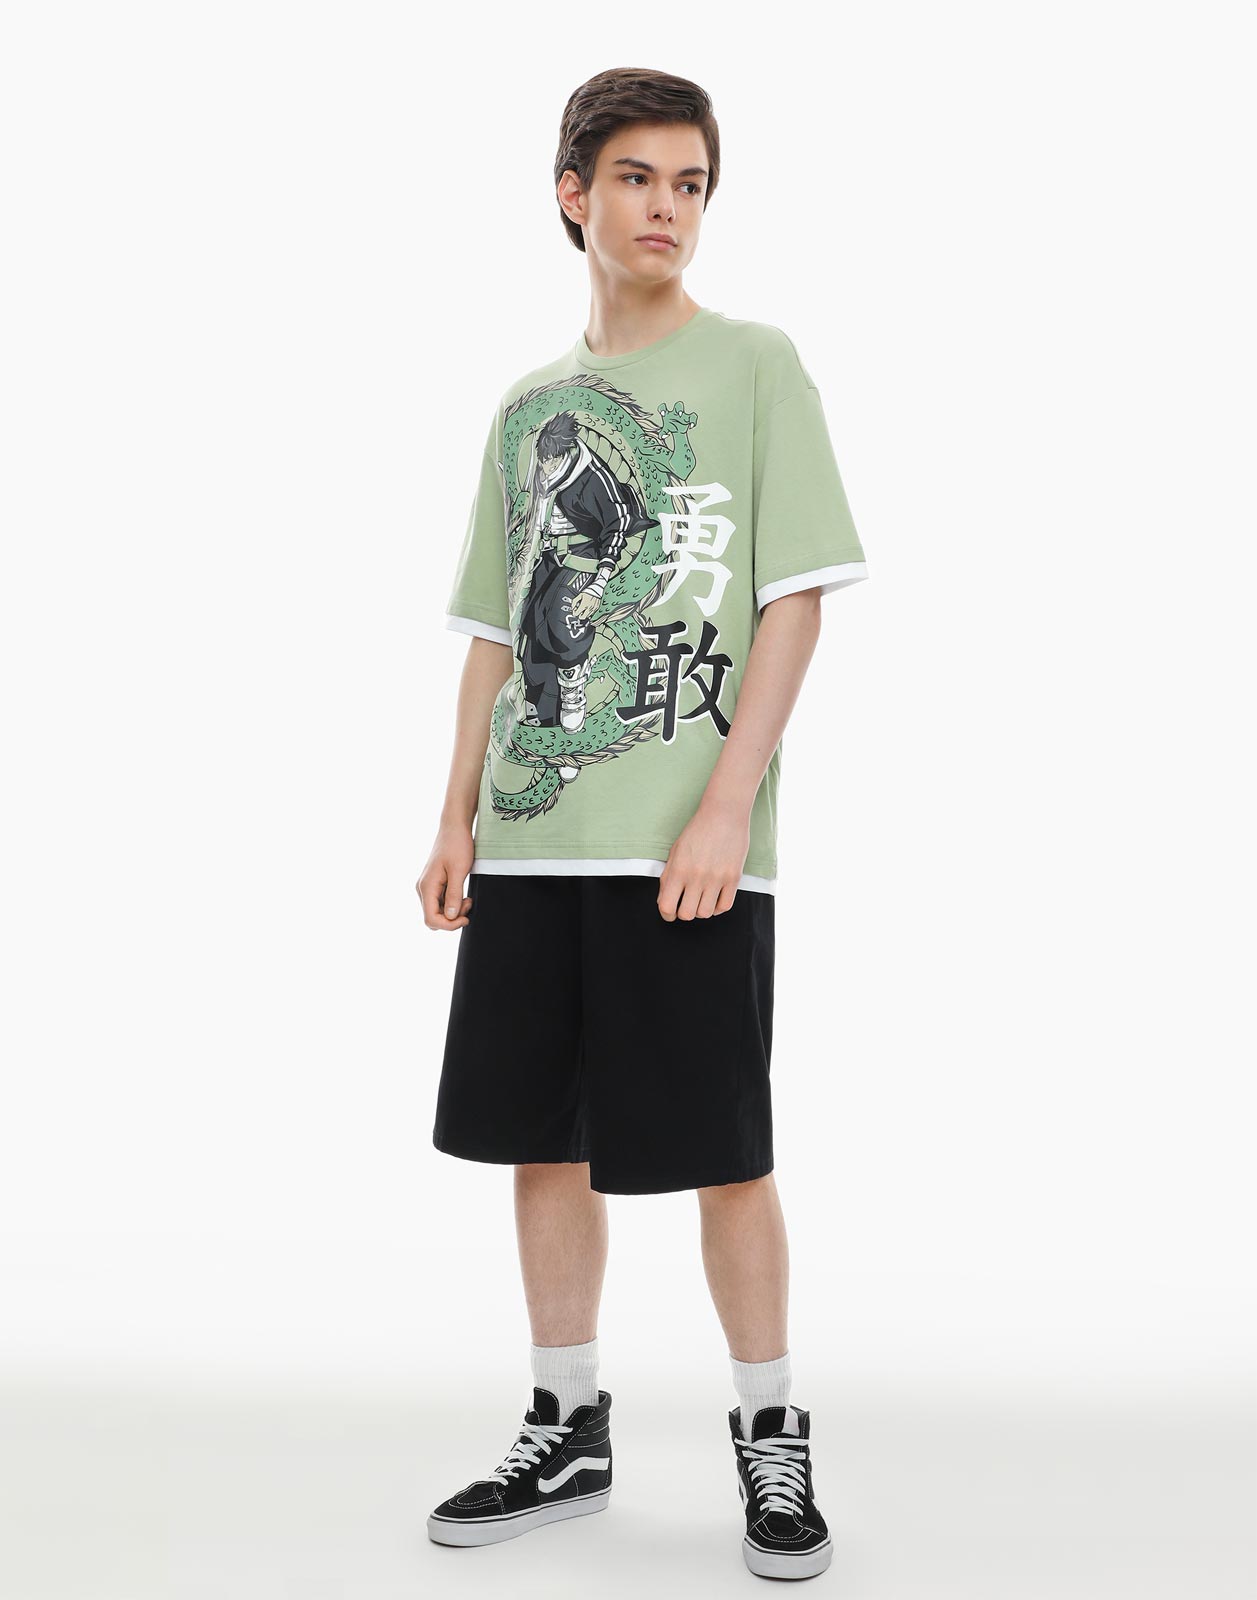 Оливковая футболка с аниме-принтом для мальчика 12-14л/158-164